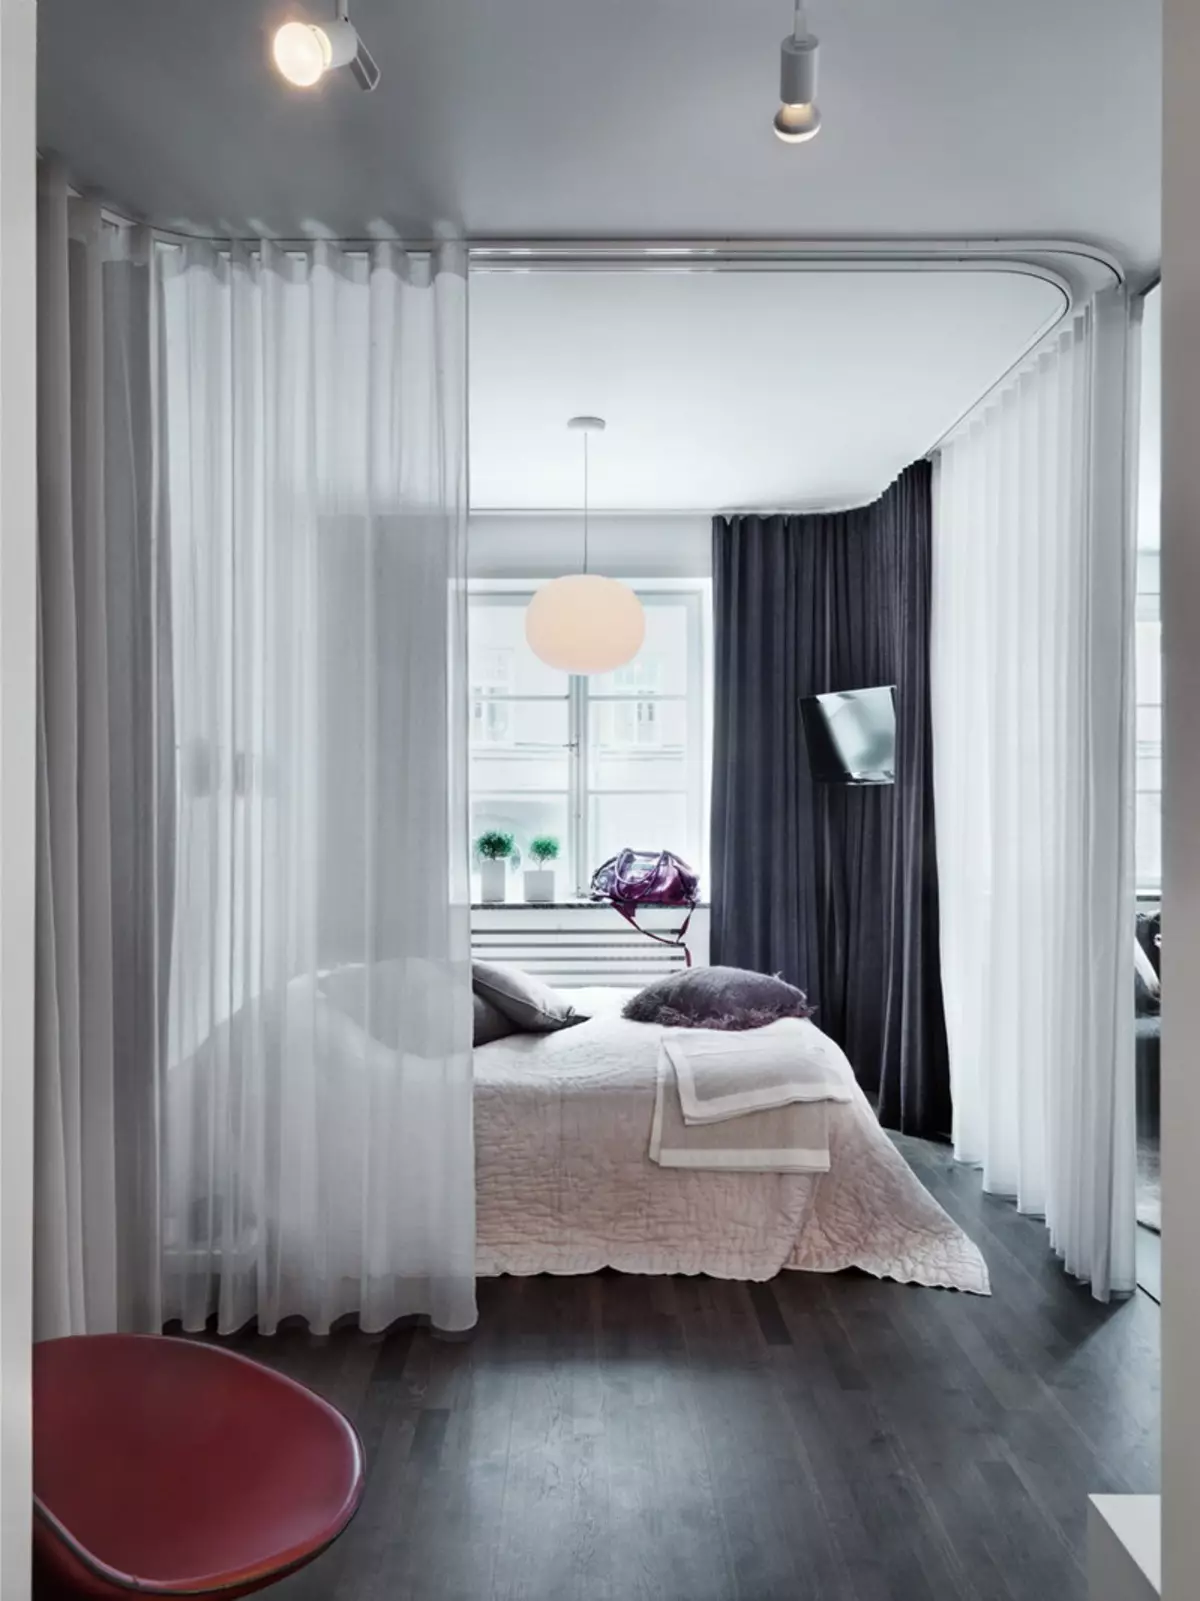 Miegamojo svetainė (112 nuotraukos): Interjero dizaino parinktys tos pačios patalpos interjero. Modulinių baldų ir tapetų, išdėstymo ir projektų pasirinkimas 9818_36